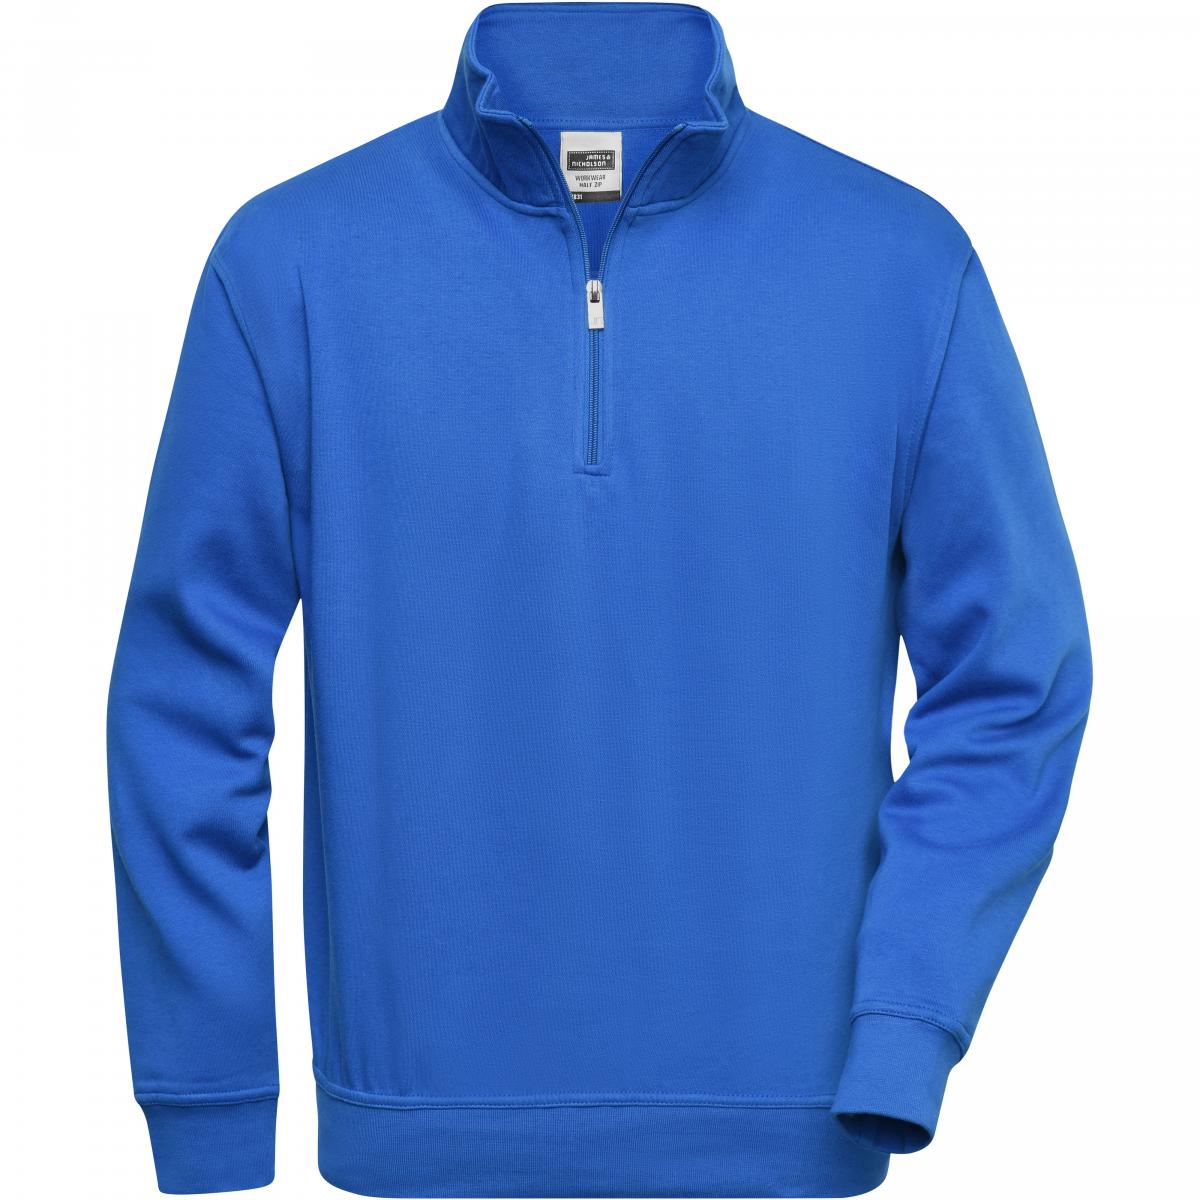 Hersteller: James+Nicholson Herstellernummer: JN831 Artikelbezeichnung: Workwear Half Zip Sweatshirt +Waschbar bis 60 °C Farbe: Royal